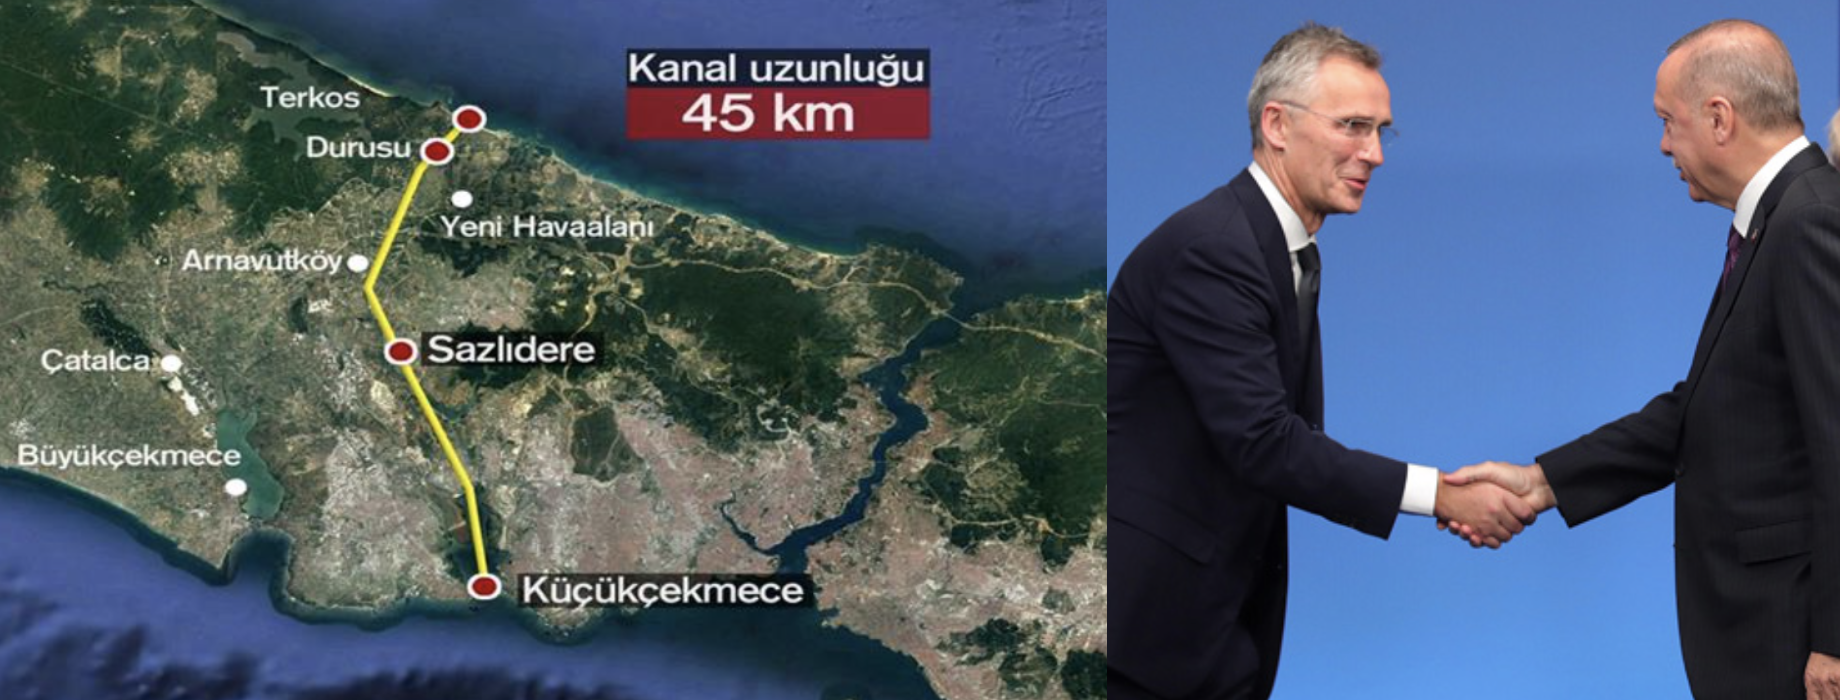 Ο Ερντογάν τραβά το δρόμο του; Ανακοίνωσε ότι το καλοκαίρι ξεκινά η Διώρυγα της Κωνσταντινούπολης